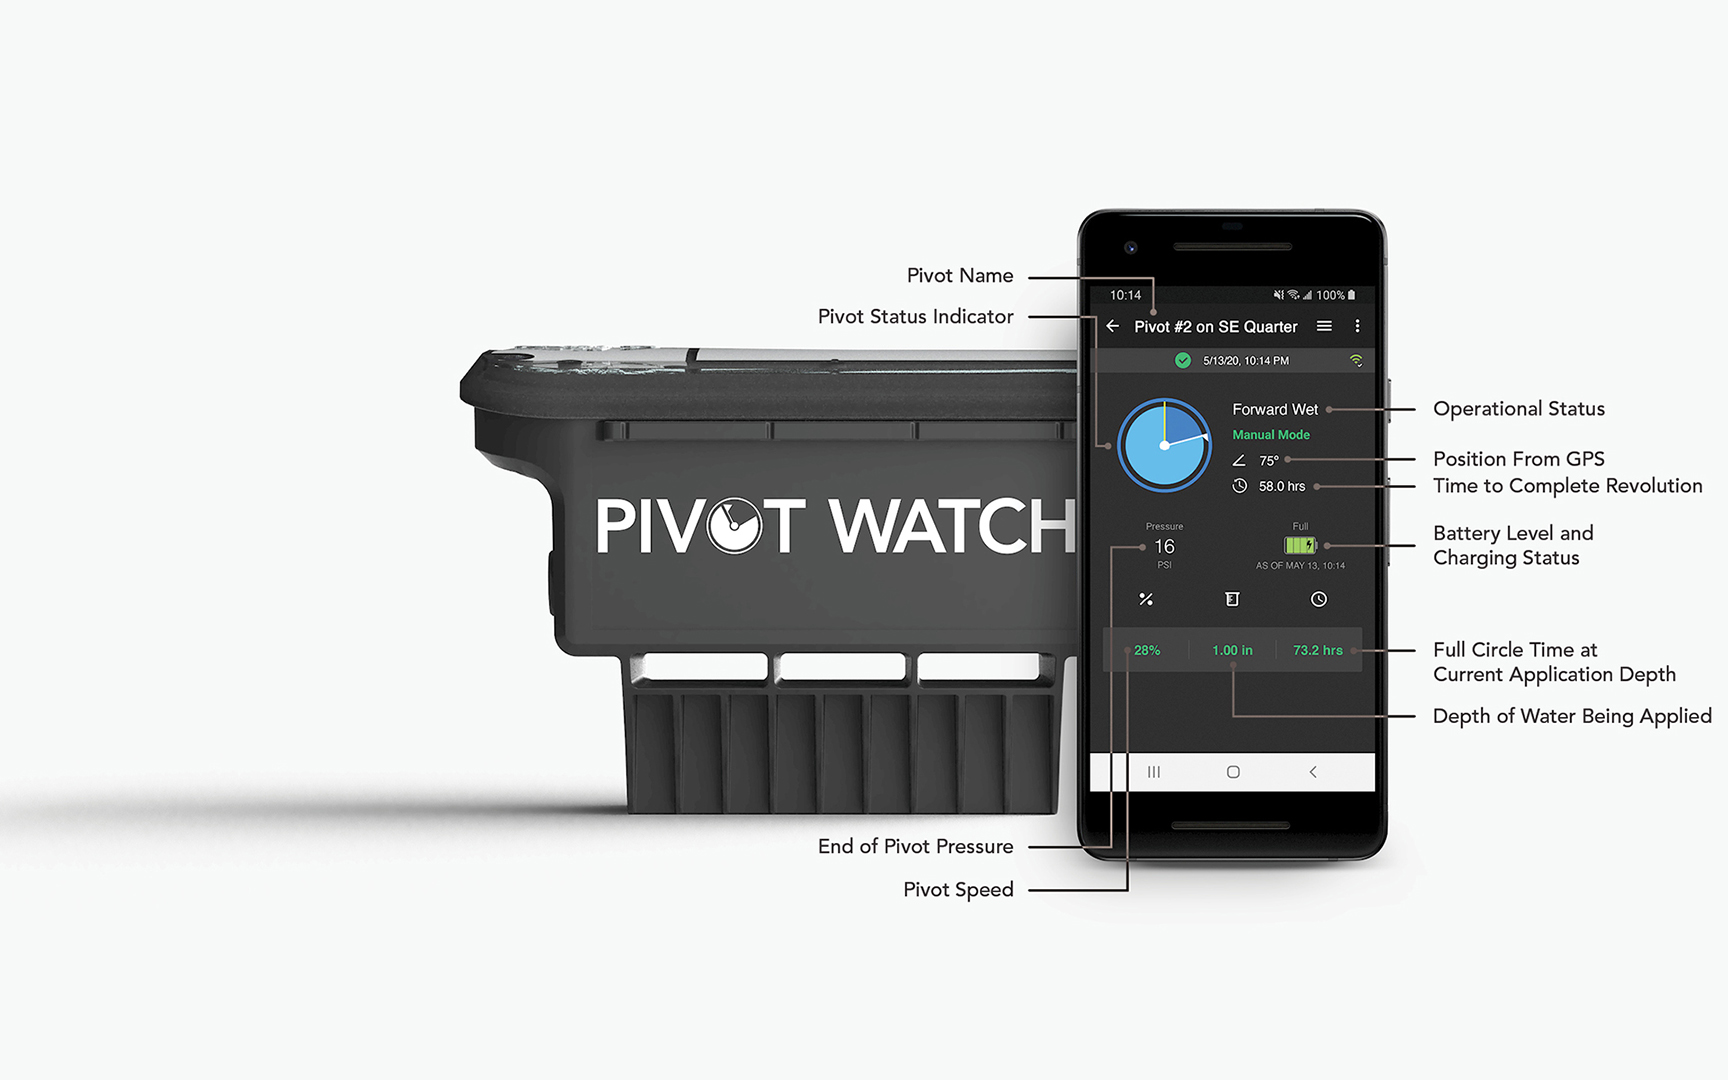 FieldNET Pivot Watch